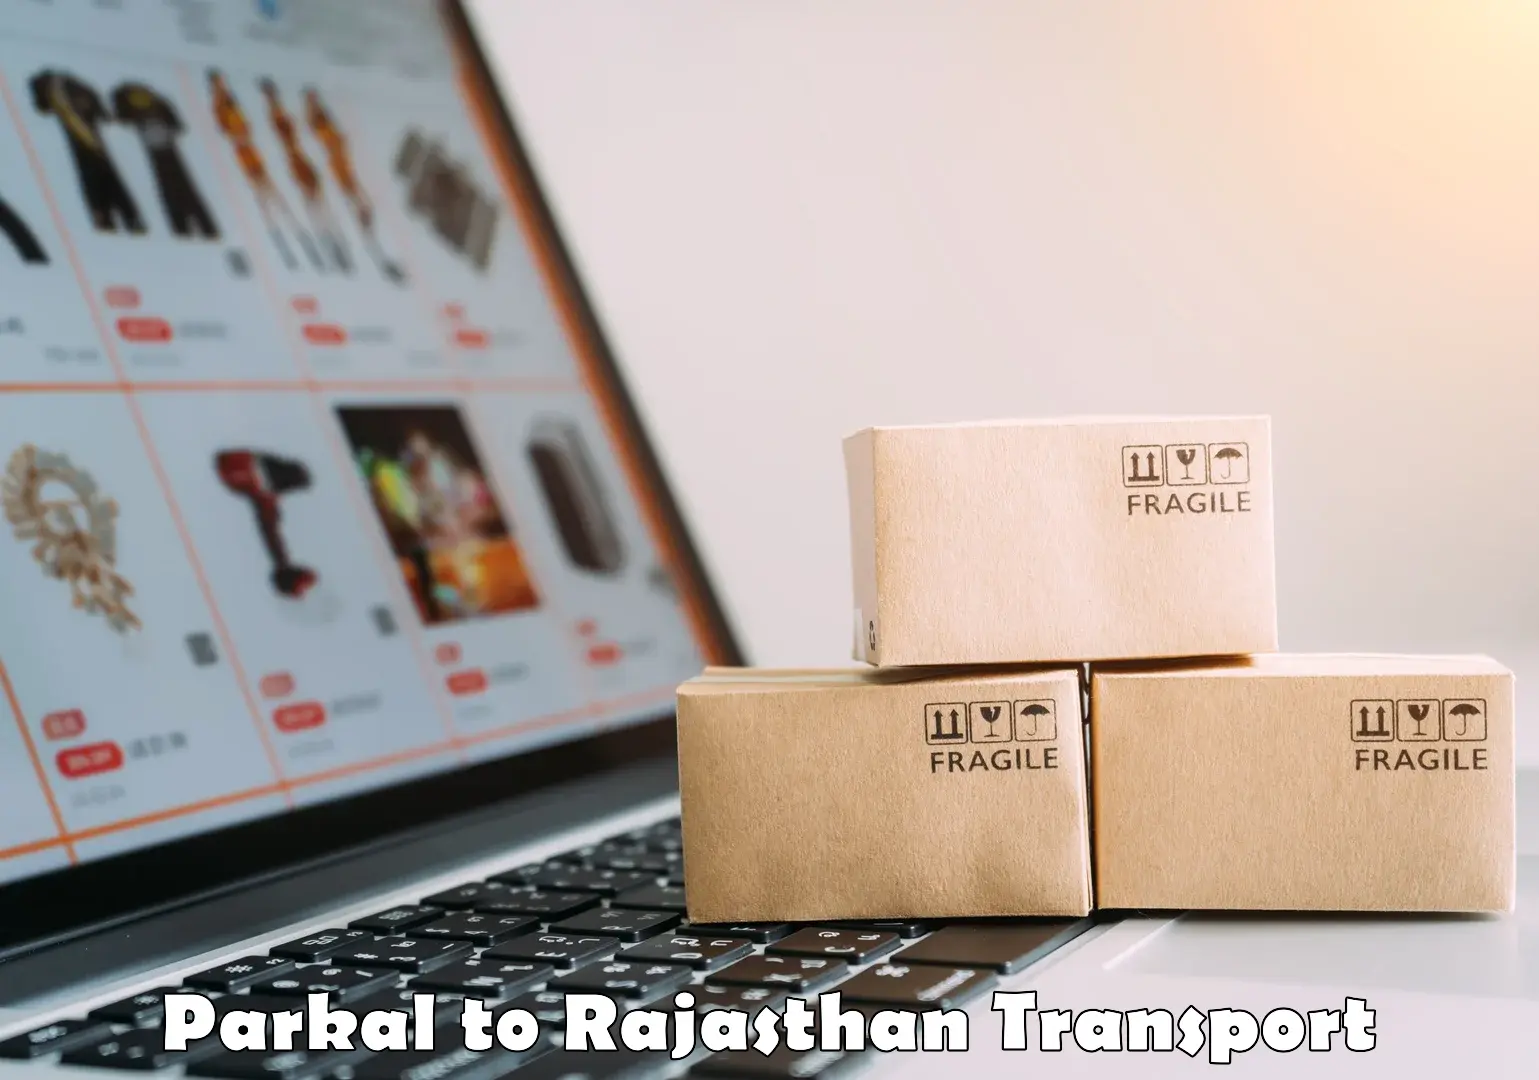 Online transport service Parkal to Balesar